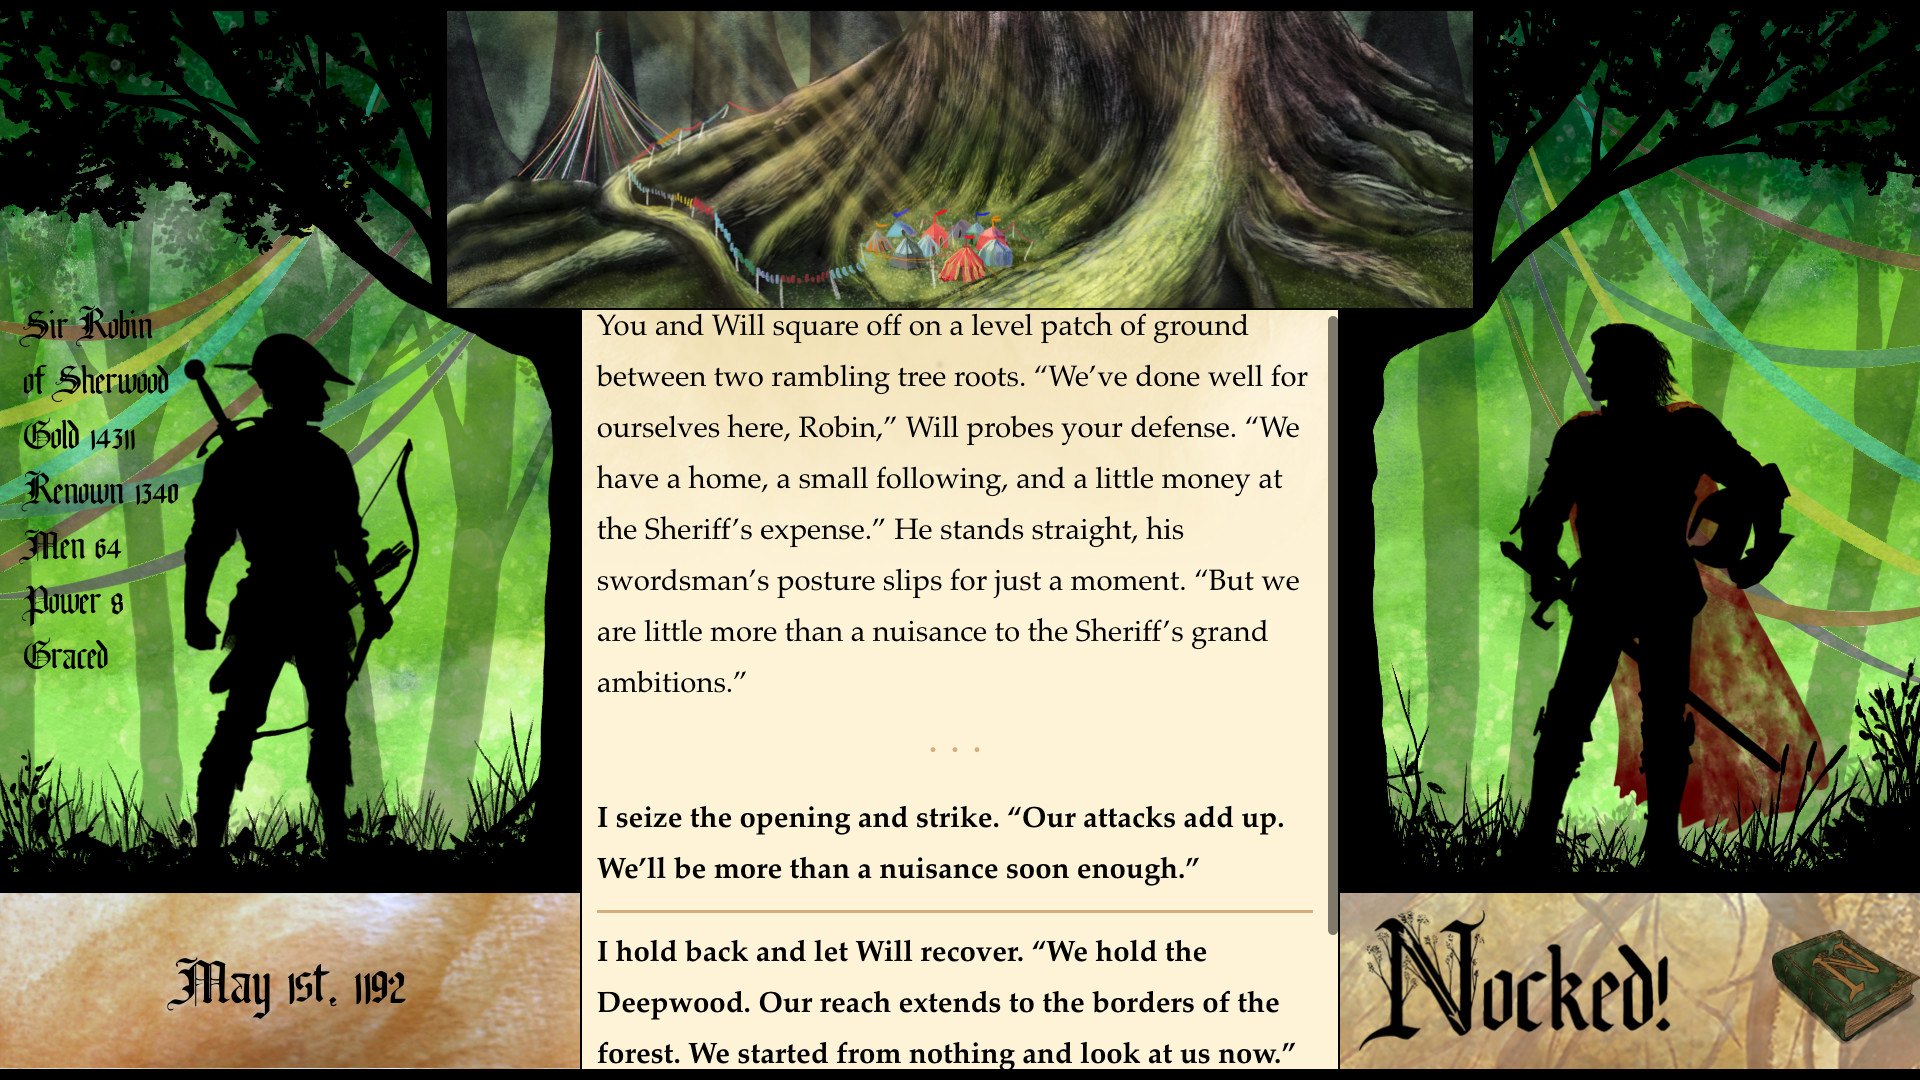 Nocked! True Tales of Robin Hood Steam CD Key 2.88 $